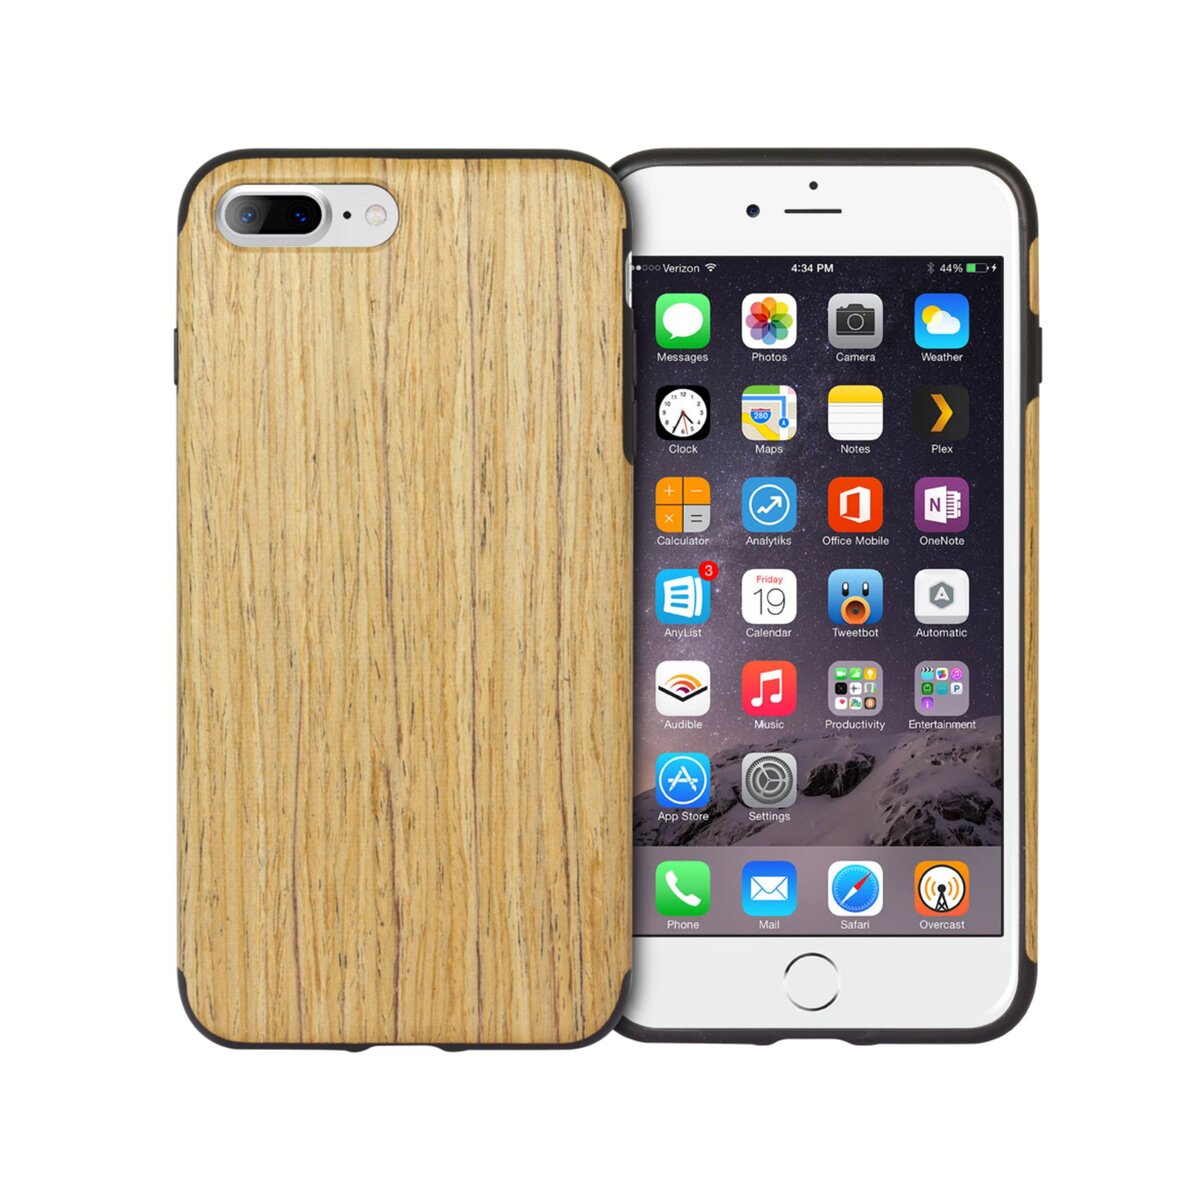 MOXIE Coque souple Medium Wood pour Iphone 7+ / 8+ - Bois